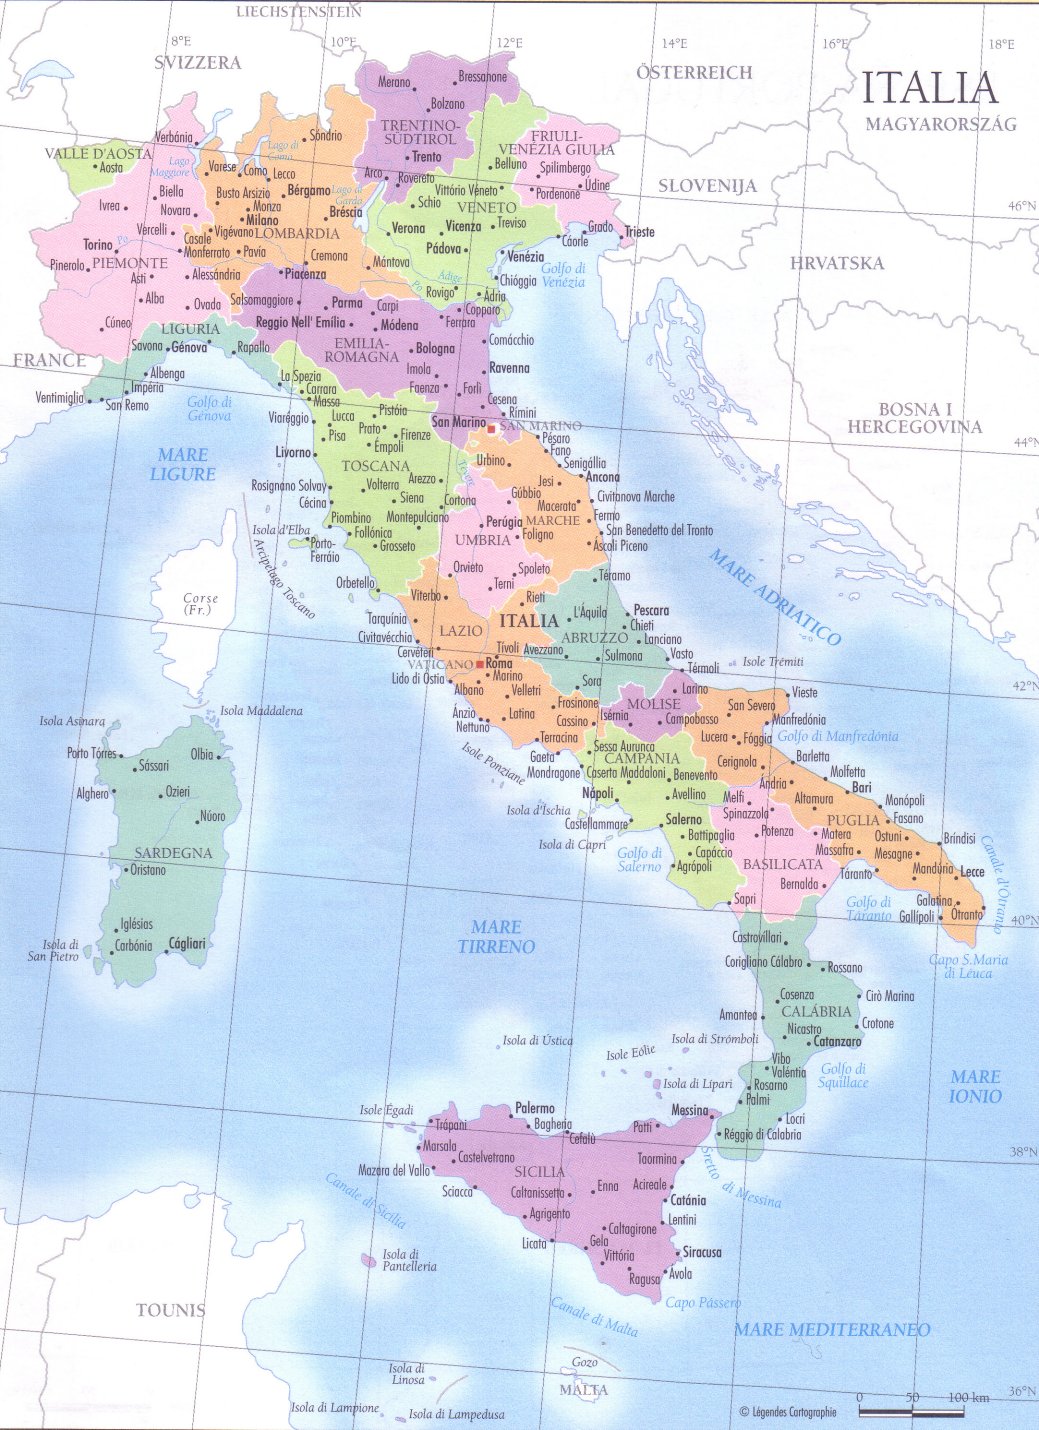 Impariamo insieme: Cartine geografiche dell'Italia